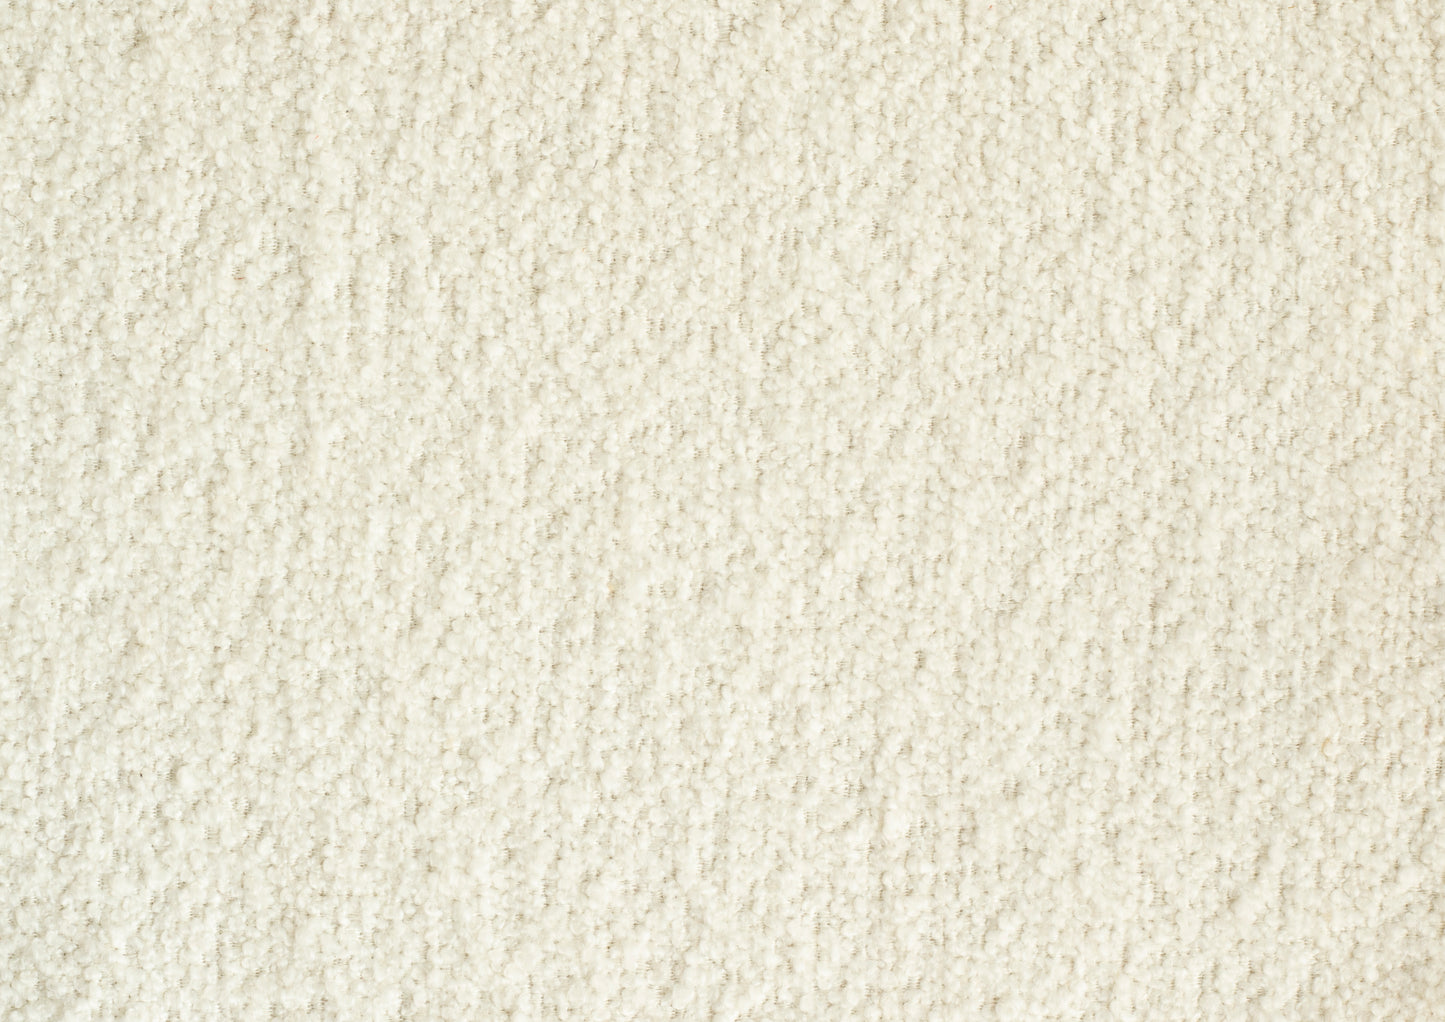 Laui Lounge™ - Retro Square Pouf Cream White